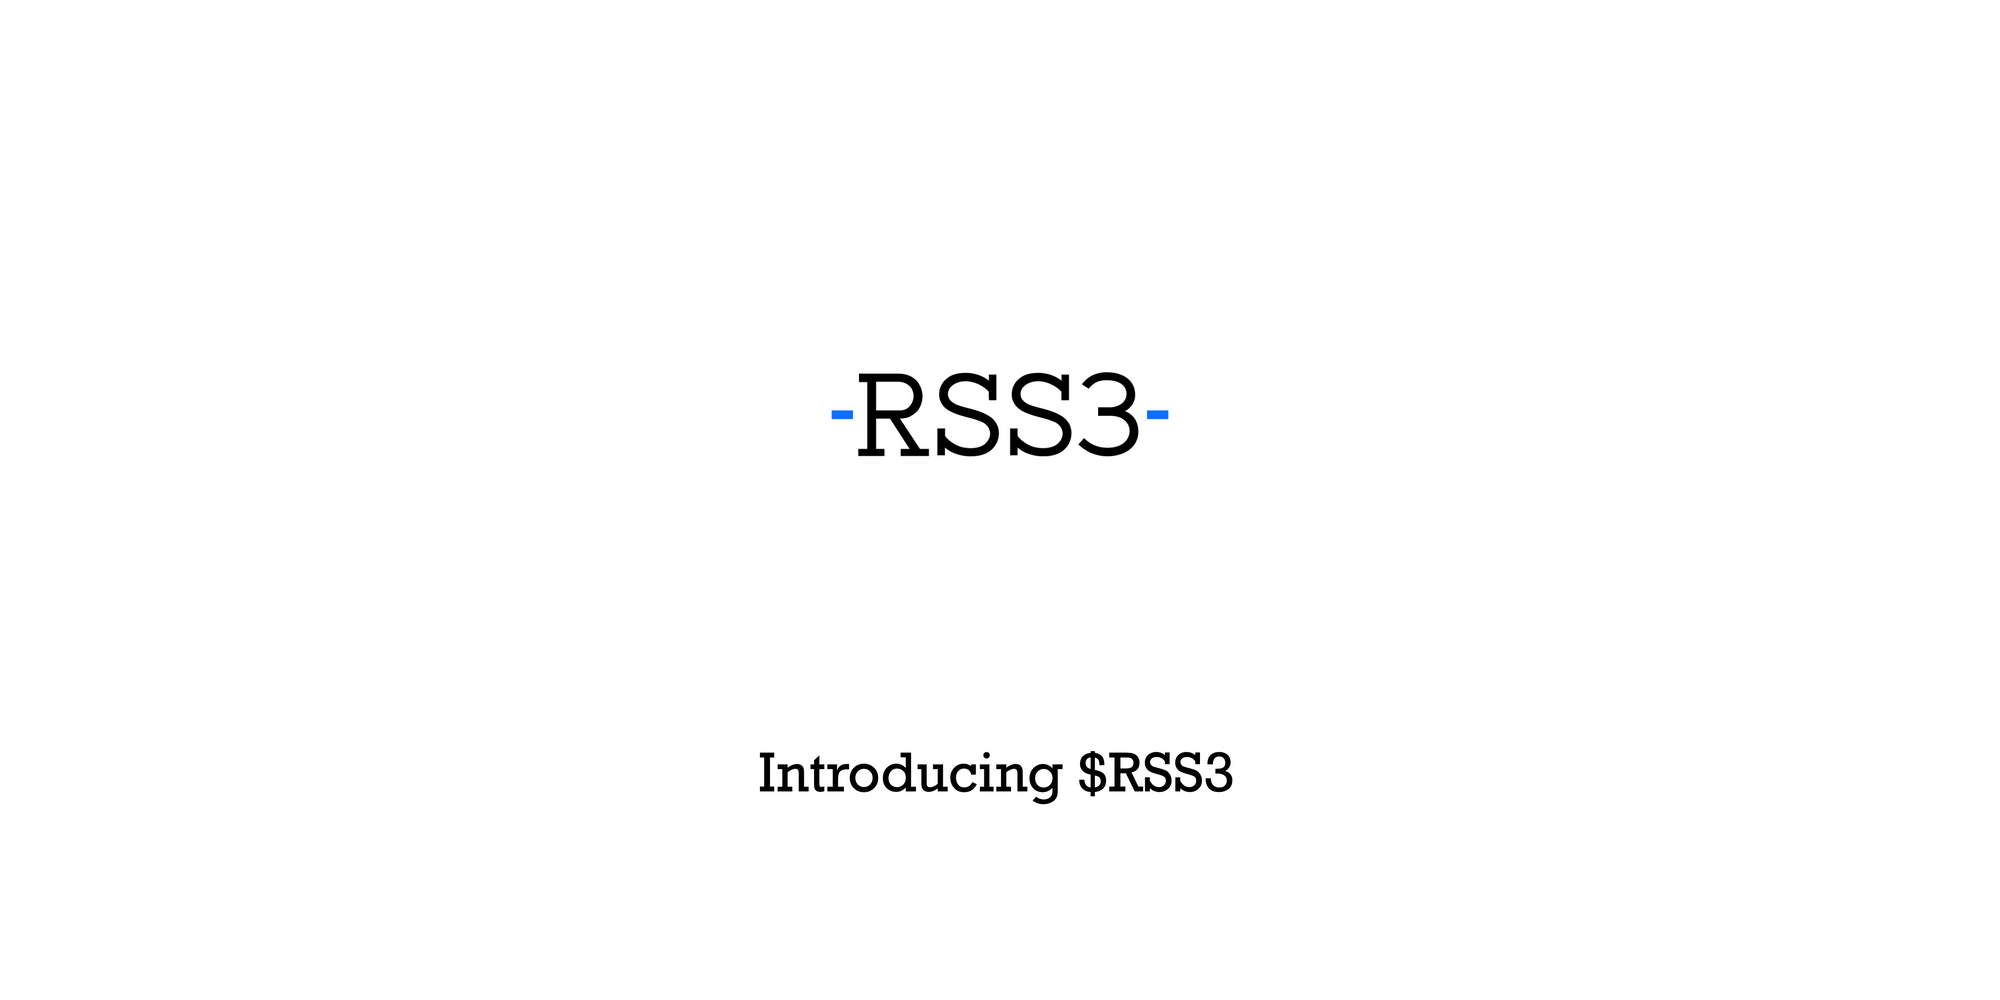 分發信息的權力長期落入中心化平台的掌控之中，我們RSS3決心改變它。